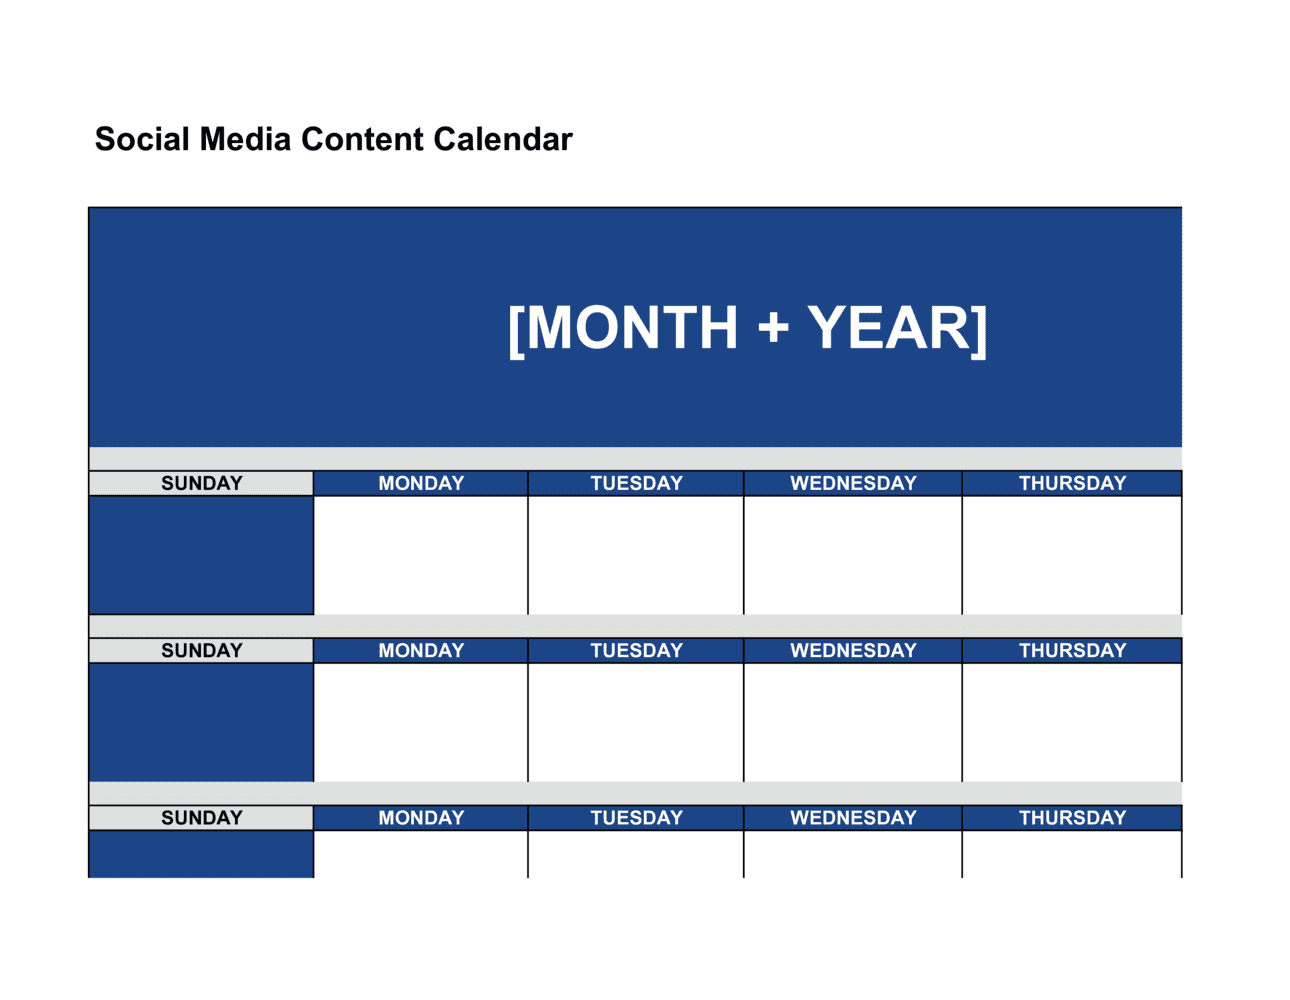 Social media content calendar